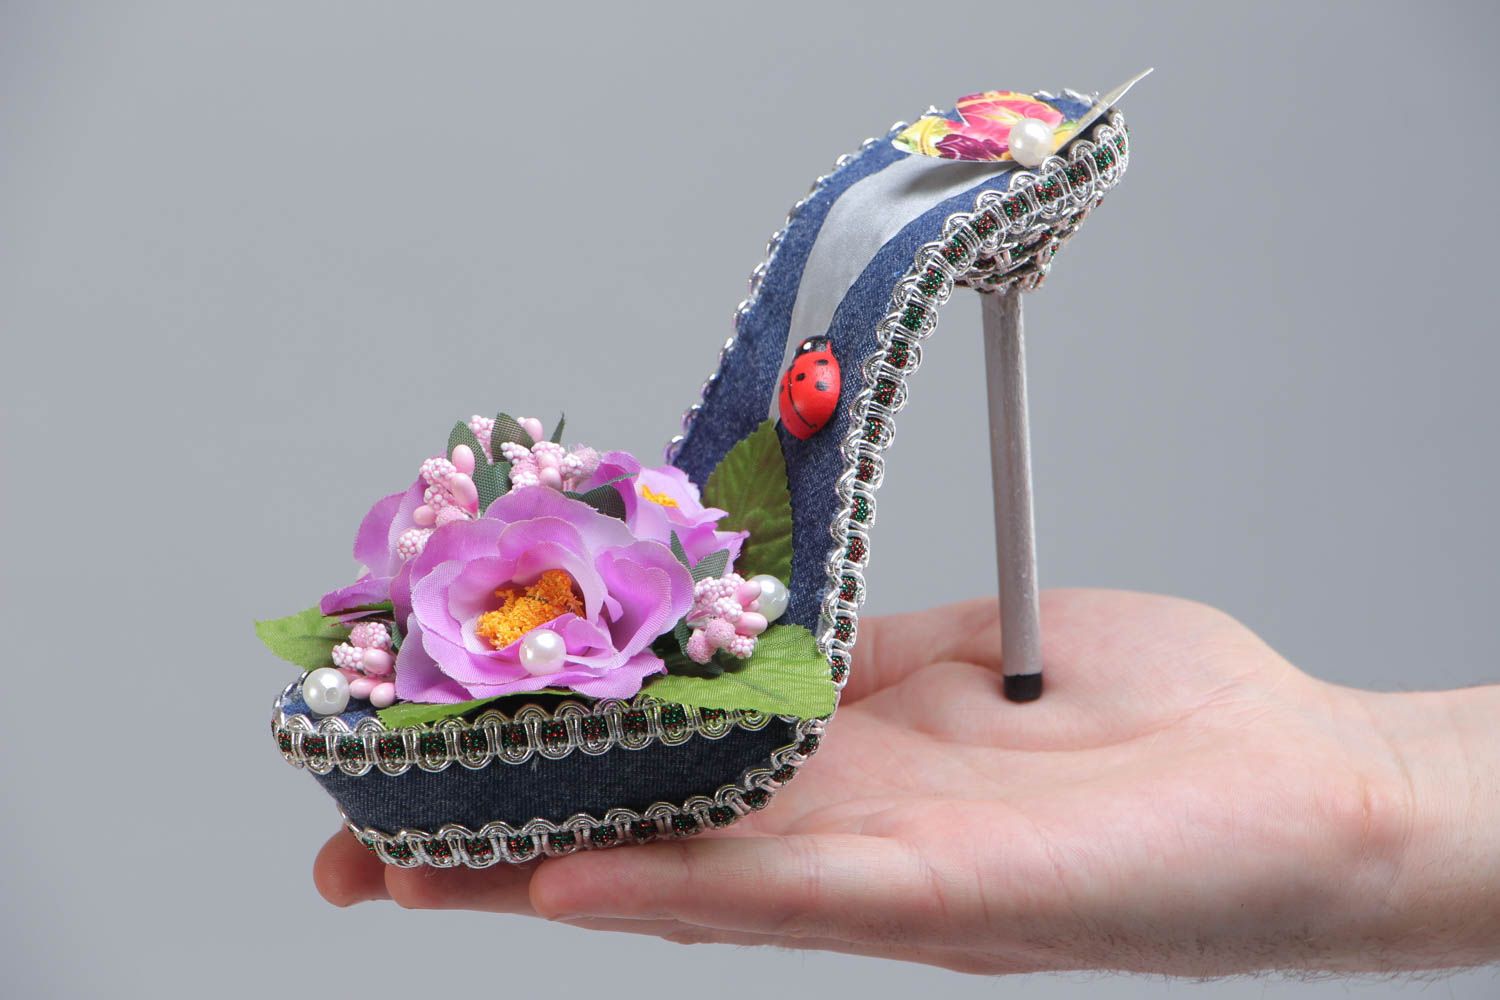 Декоративная туфелька с цветами для украшения дома топиарий цветная хэнд мейд фото 5